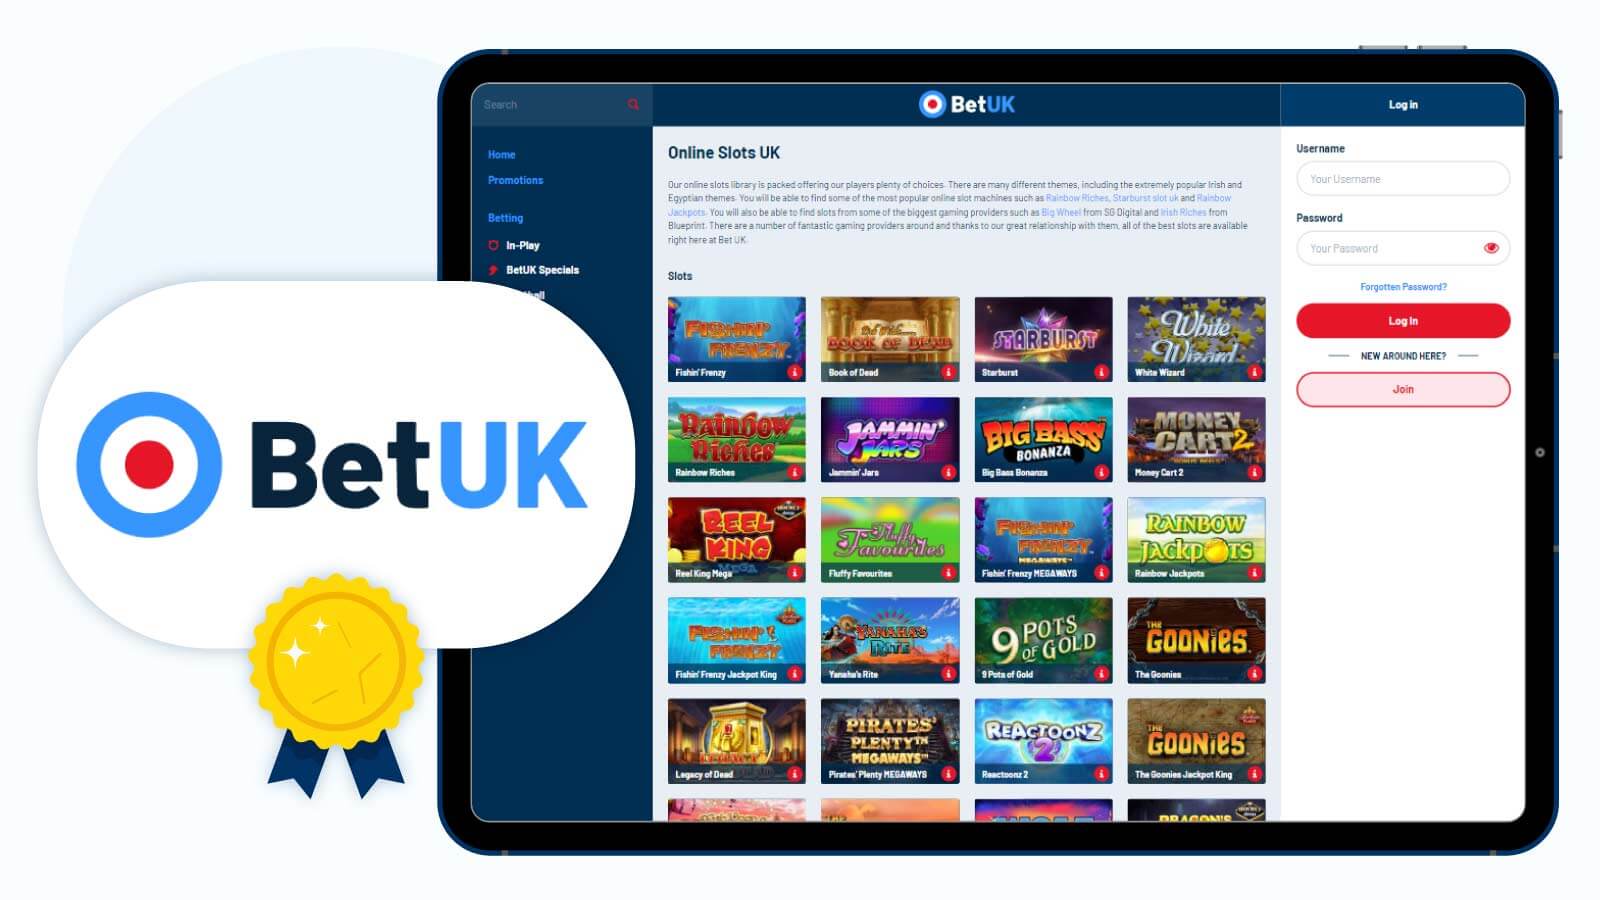 BetUK-Casino-Best-RTG-Casino-Overall-in-the-UK